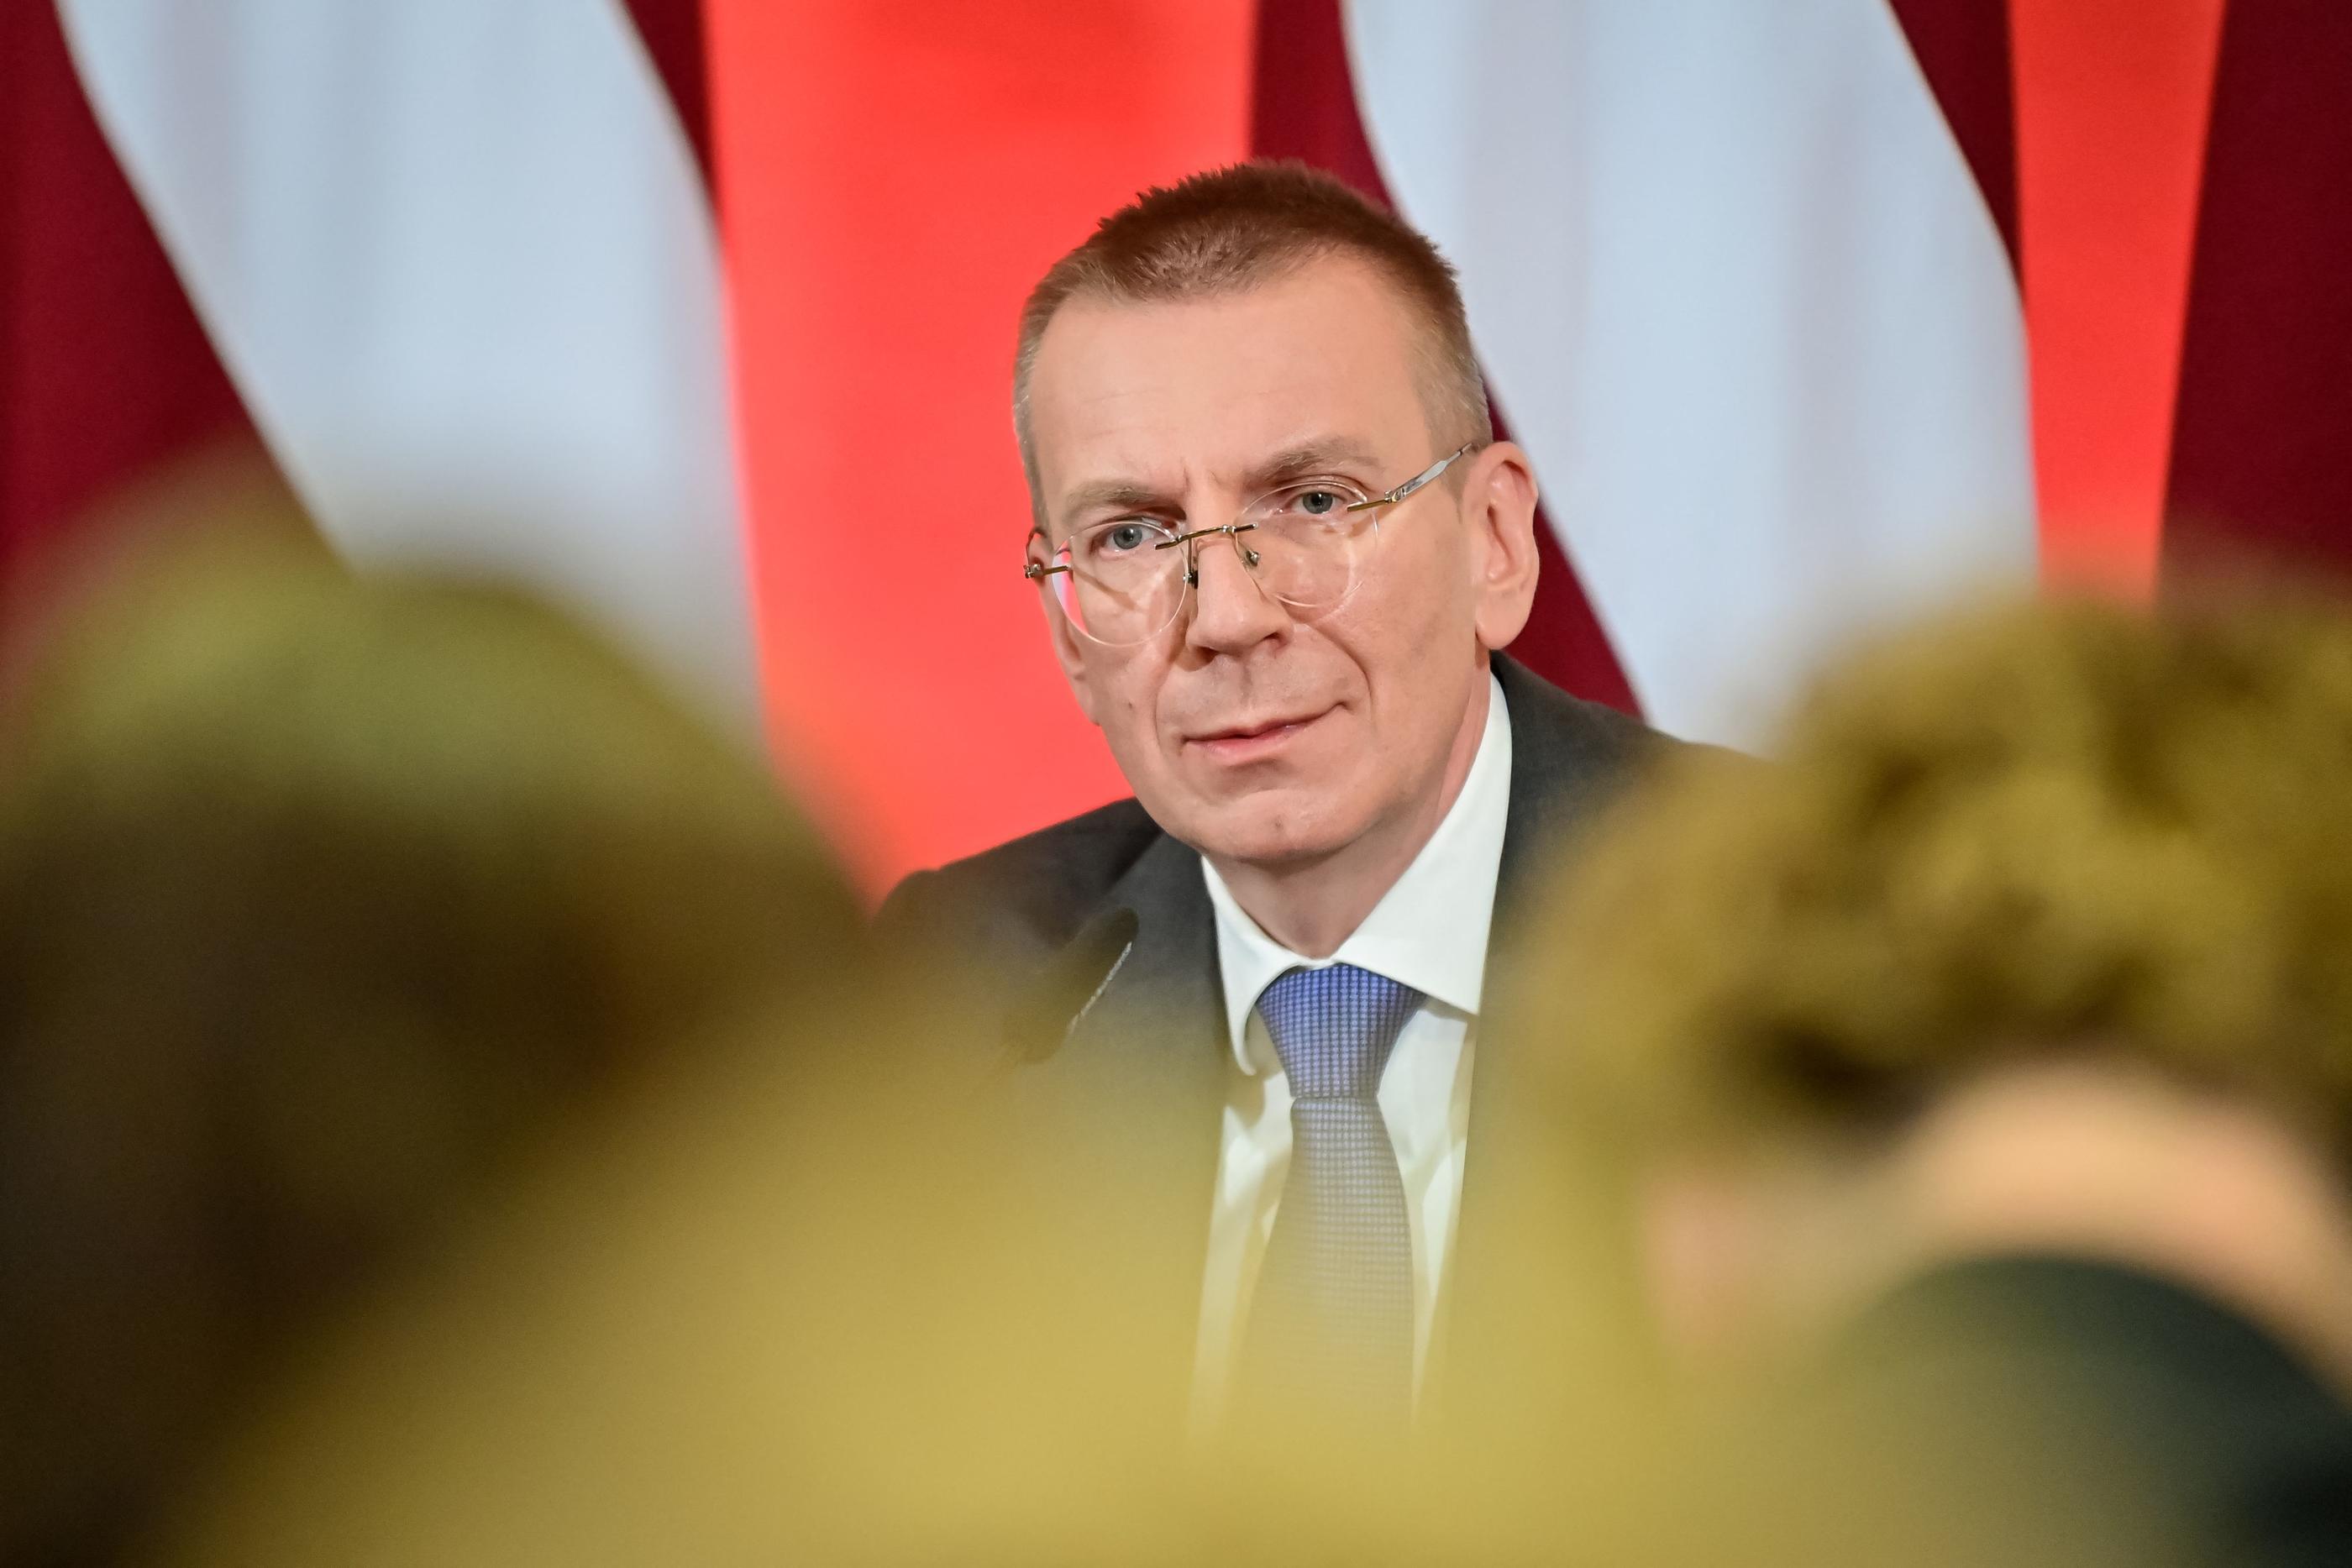 Edgars Rinkevics a été élu président de la Lettonie par le Parlement. AFP/Gints Ivuskans